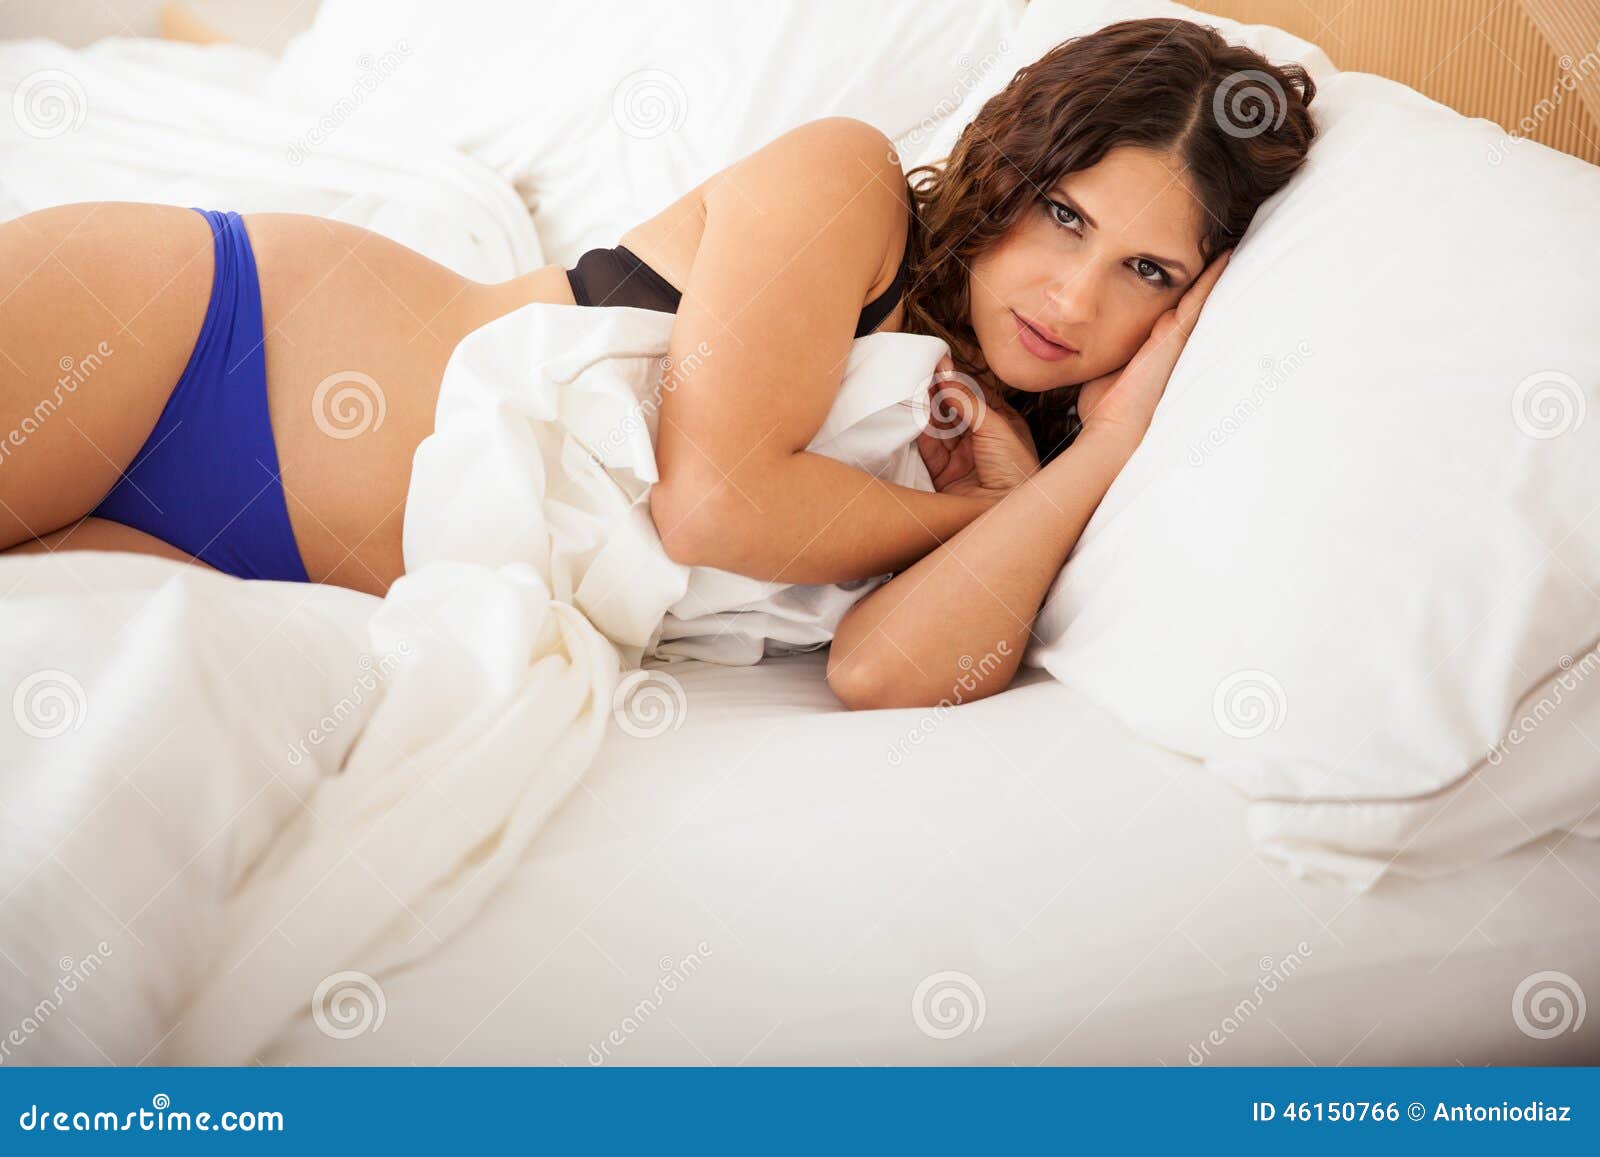 sexy teen girl sleeping sex photo